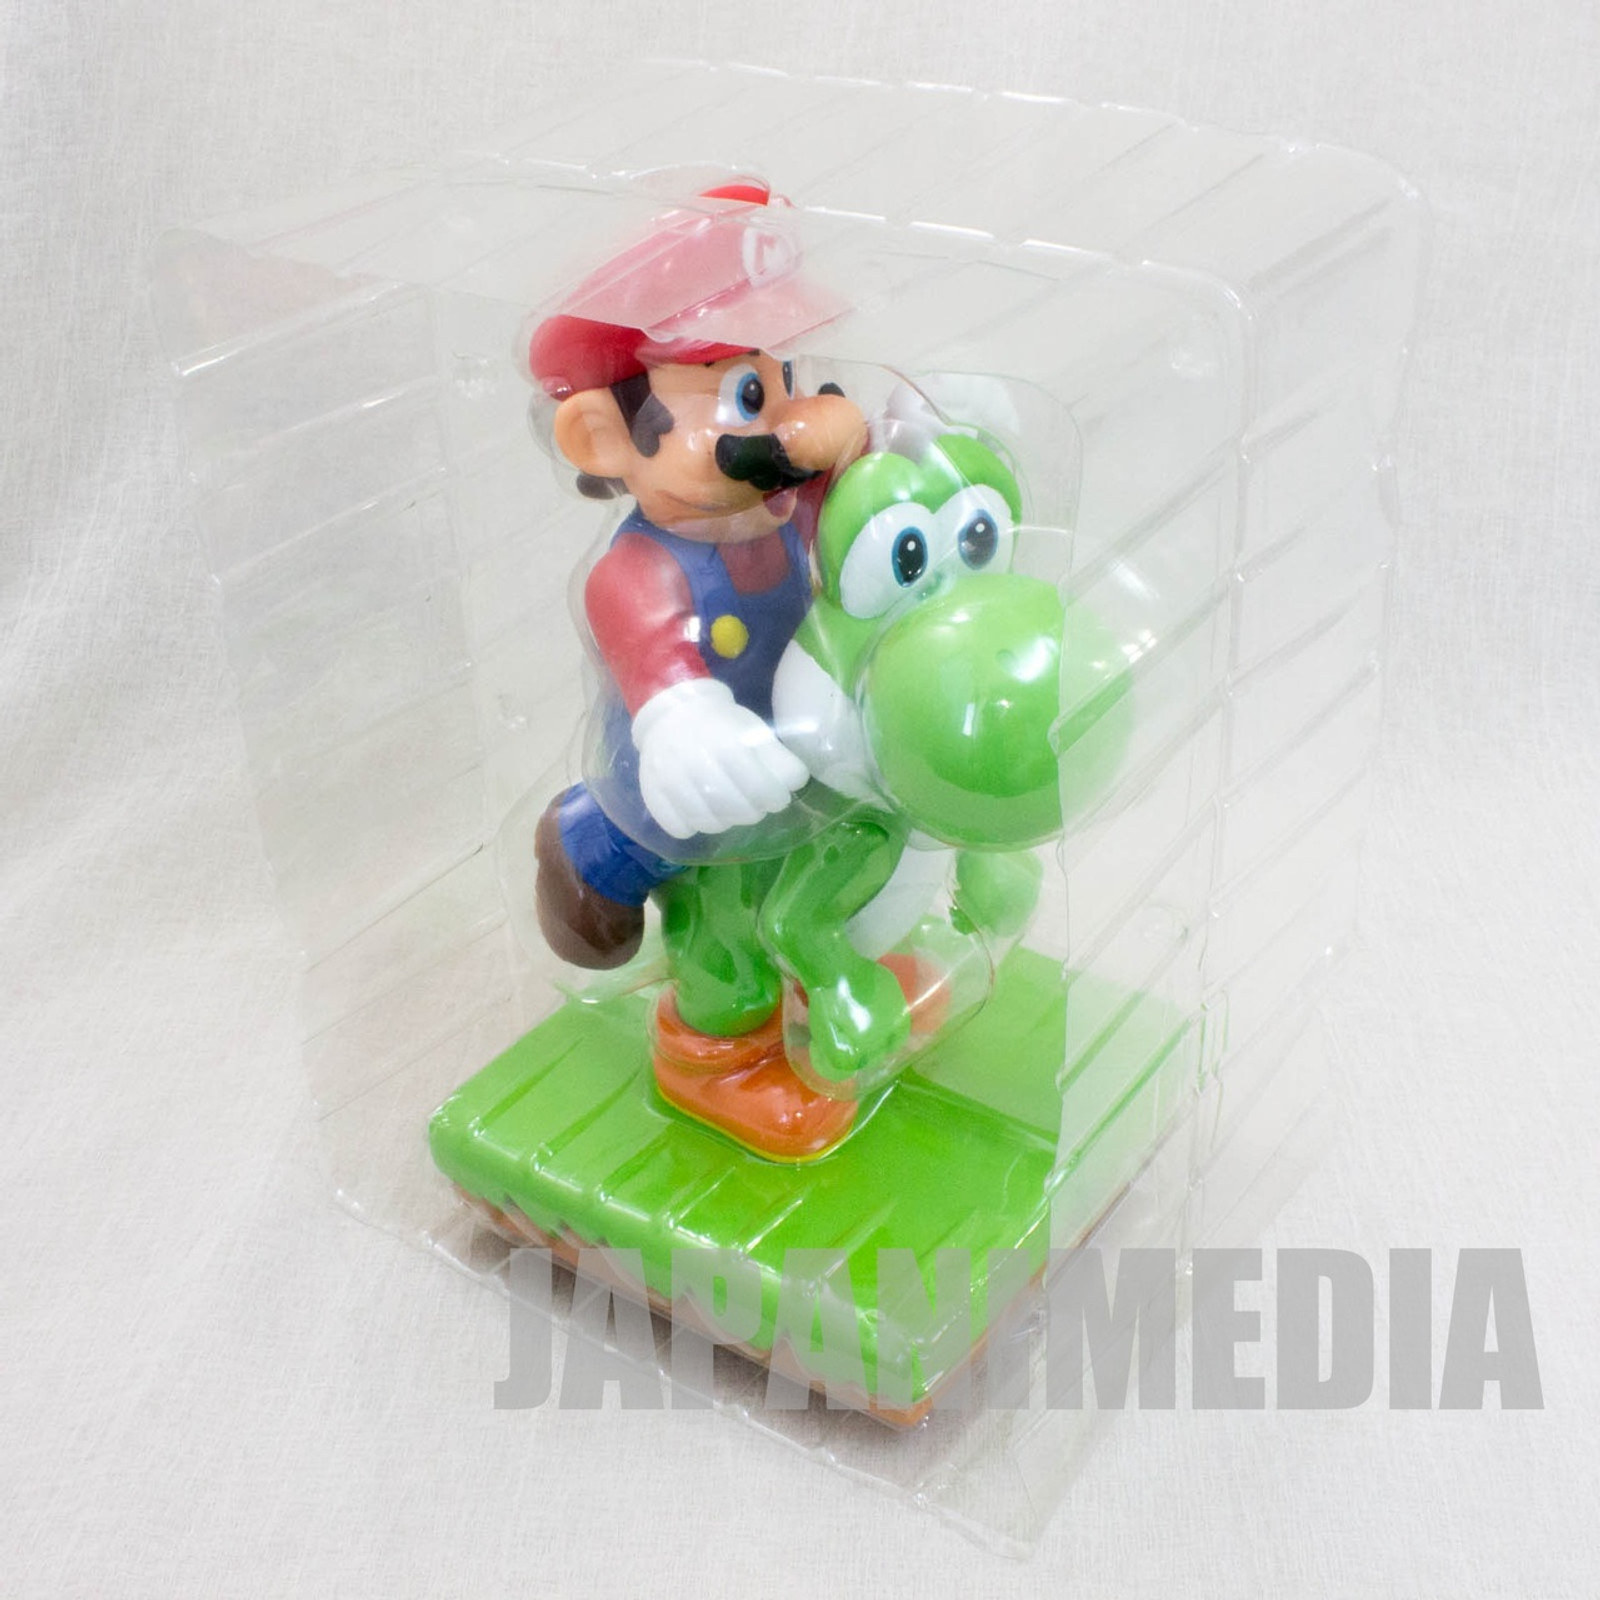 Super Mario Bros. Mario Riding Yoshi Big Figure 9" JAPAN NES FAMICOM NINTENDO